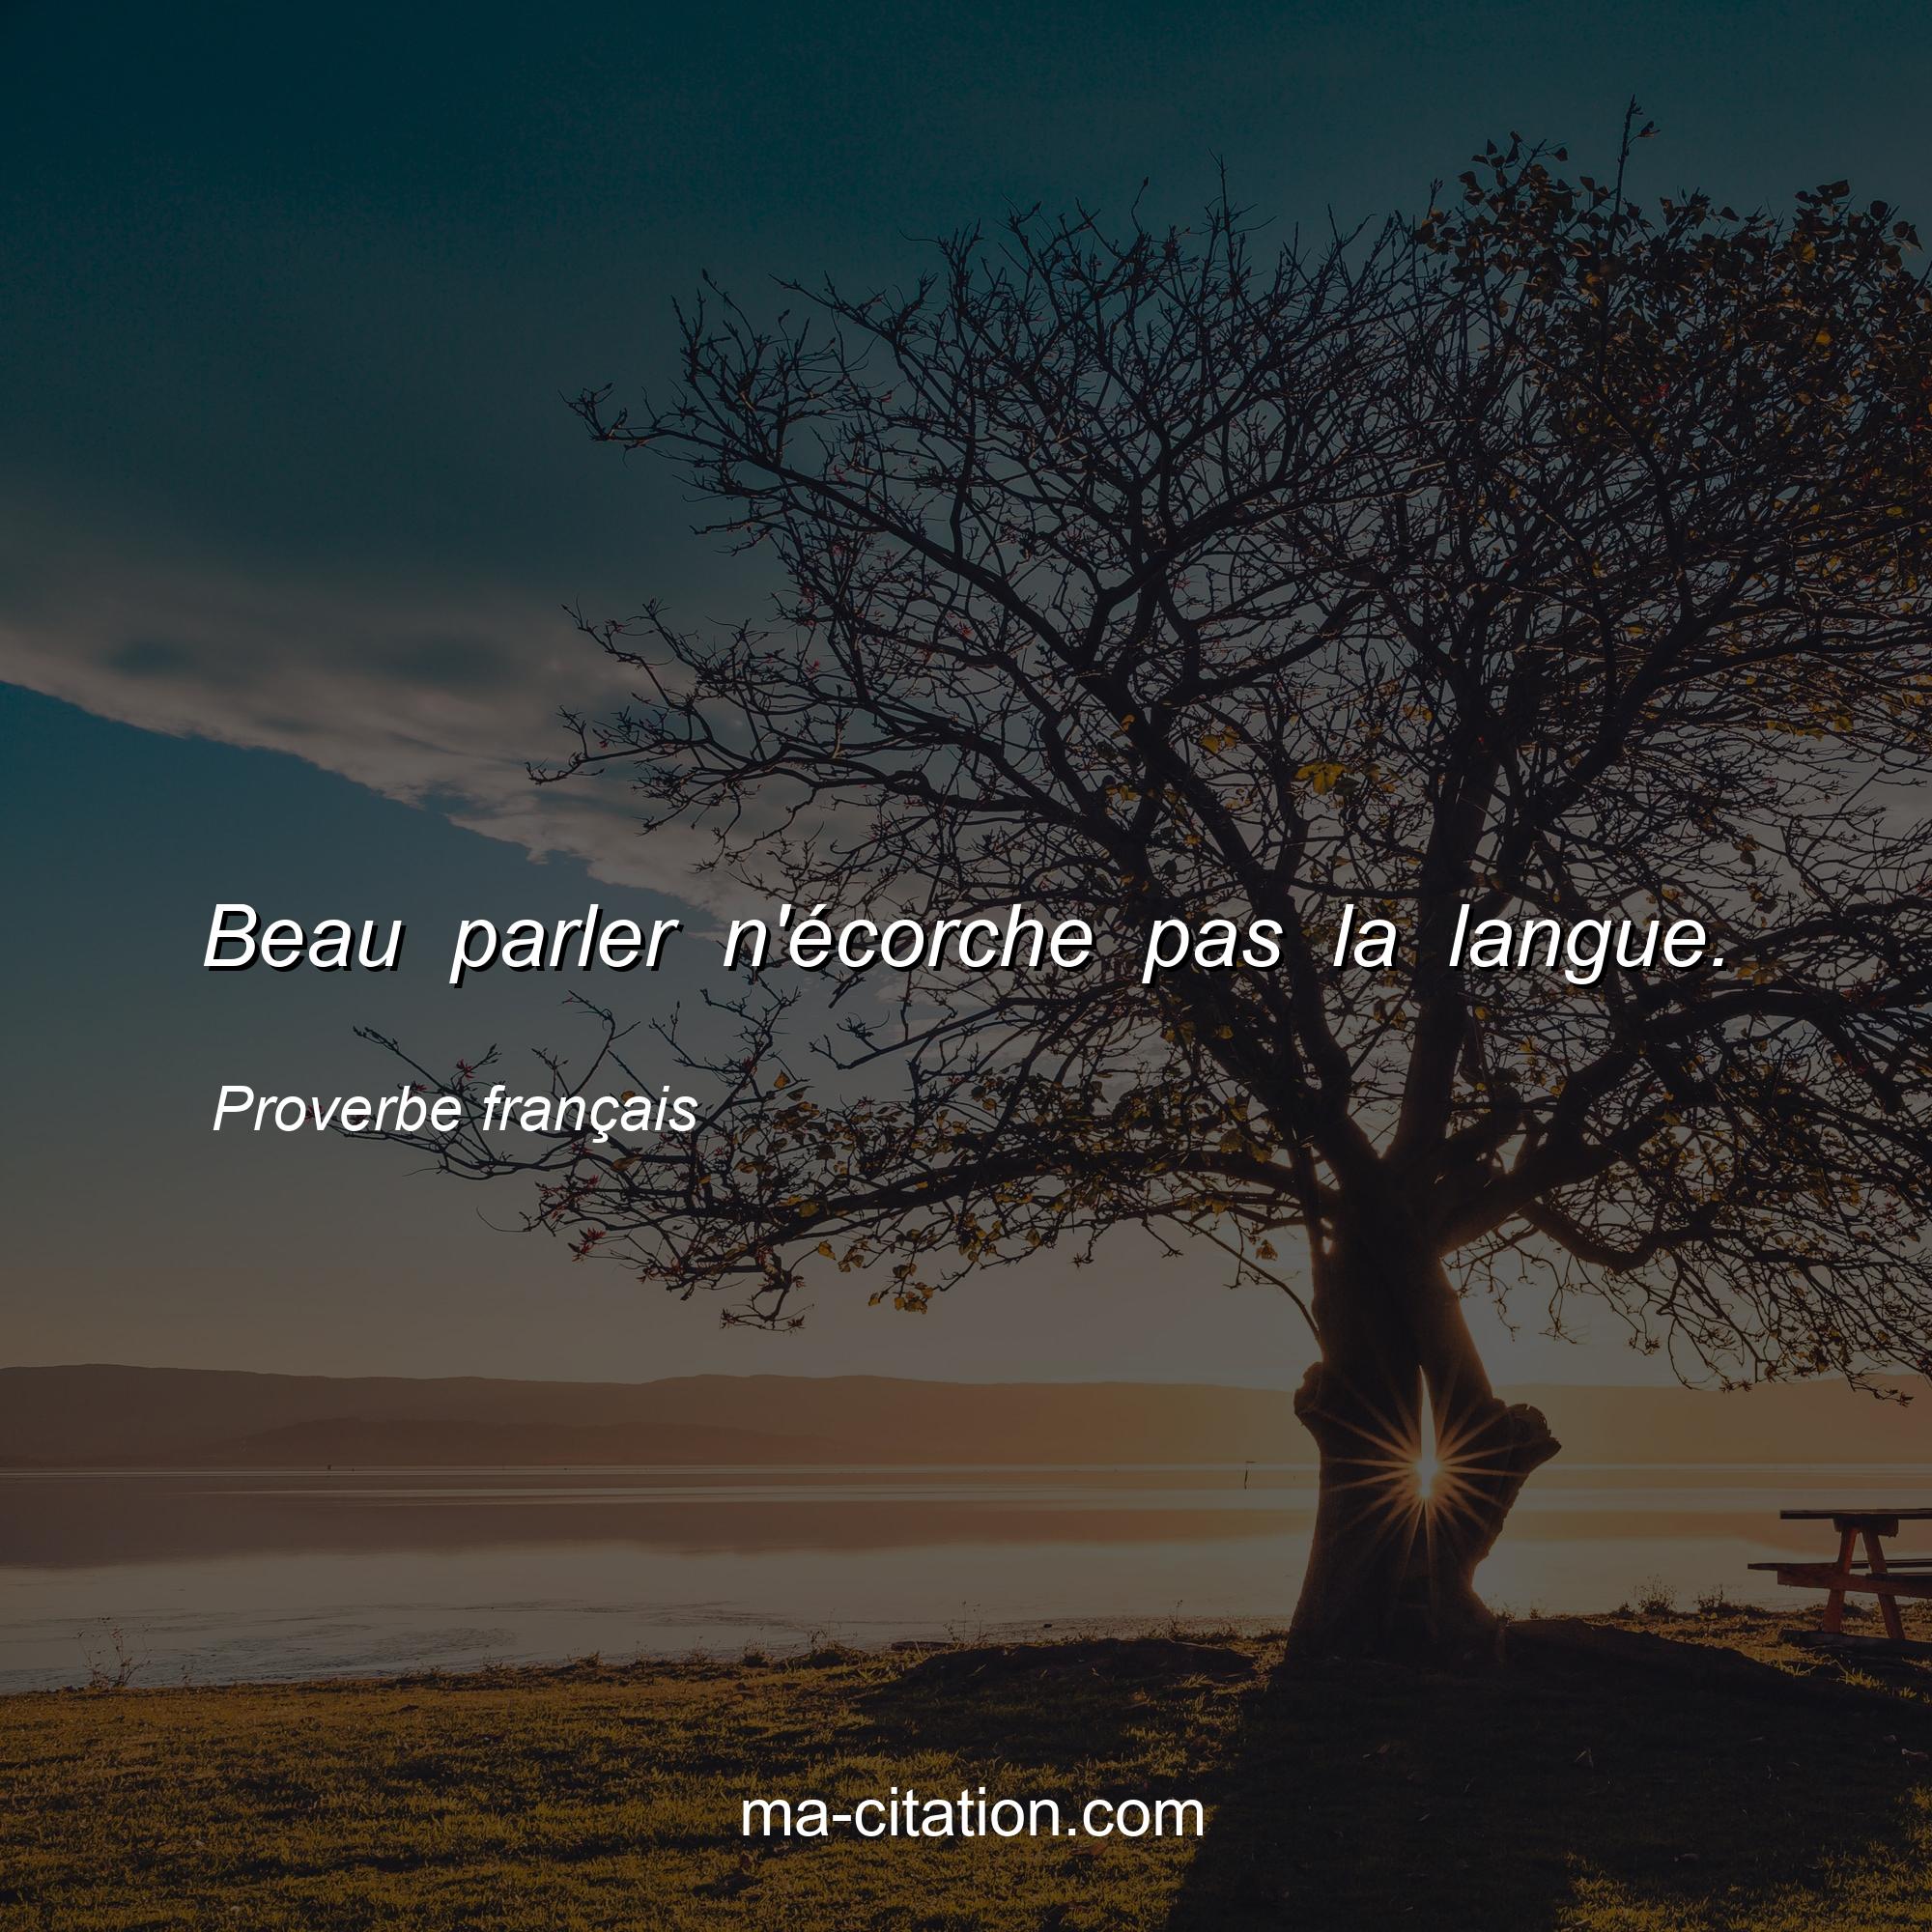 Proverbe français : Beau parler n'écorche pas la langue.